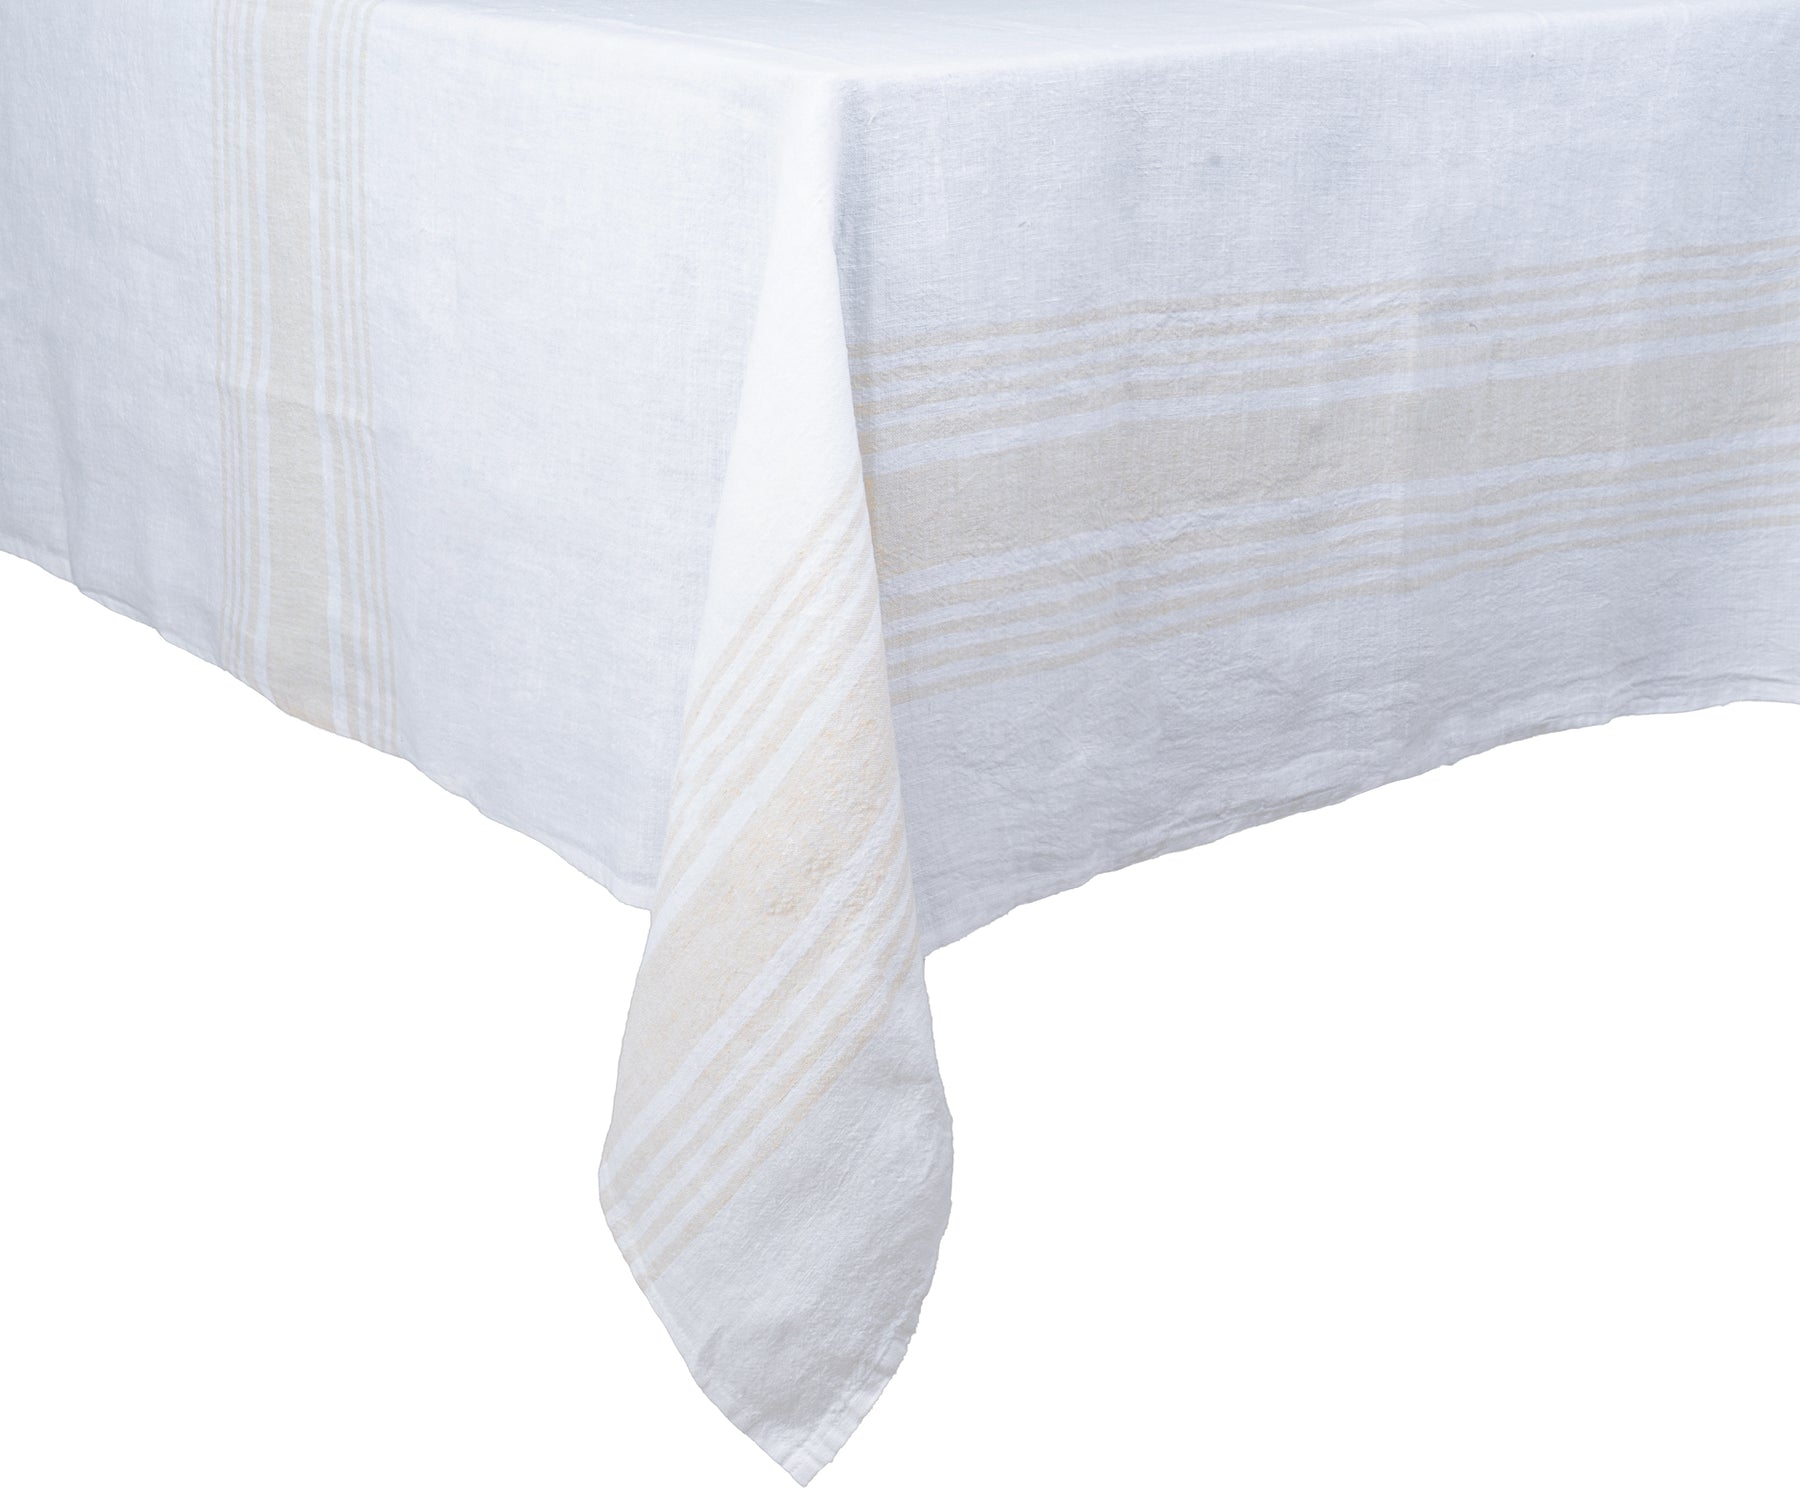 Crisp white striped linen tablecloth for elegant table settings